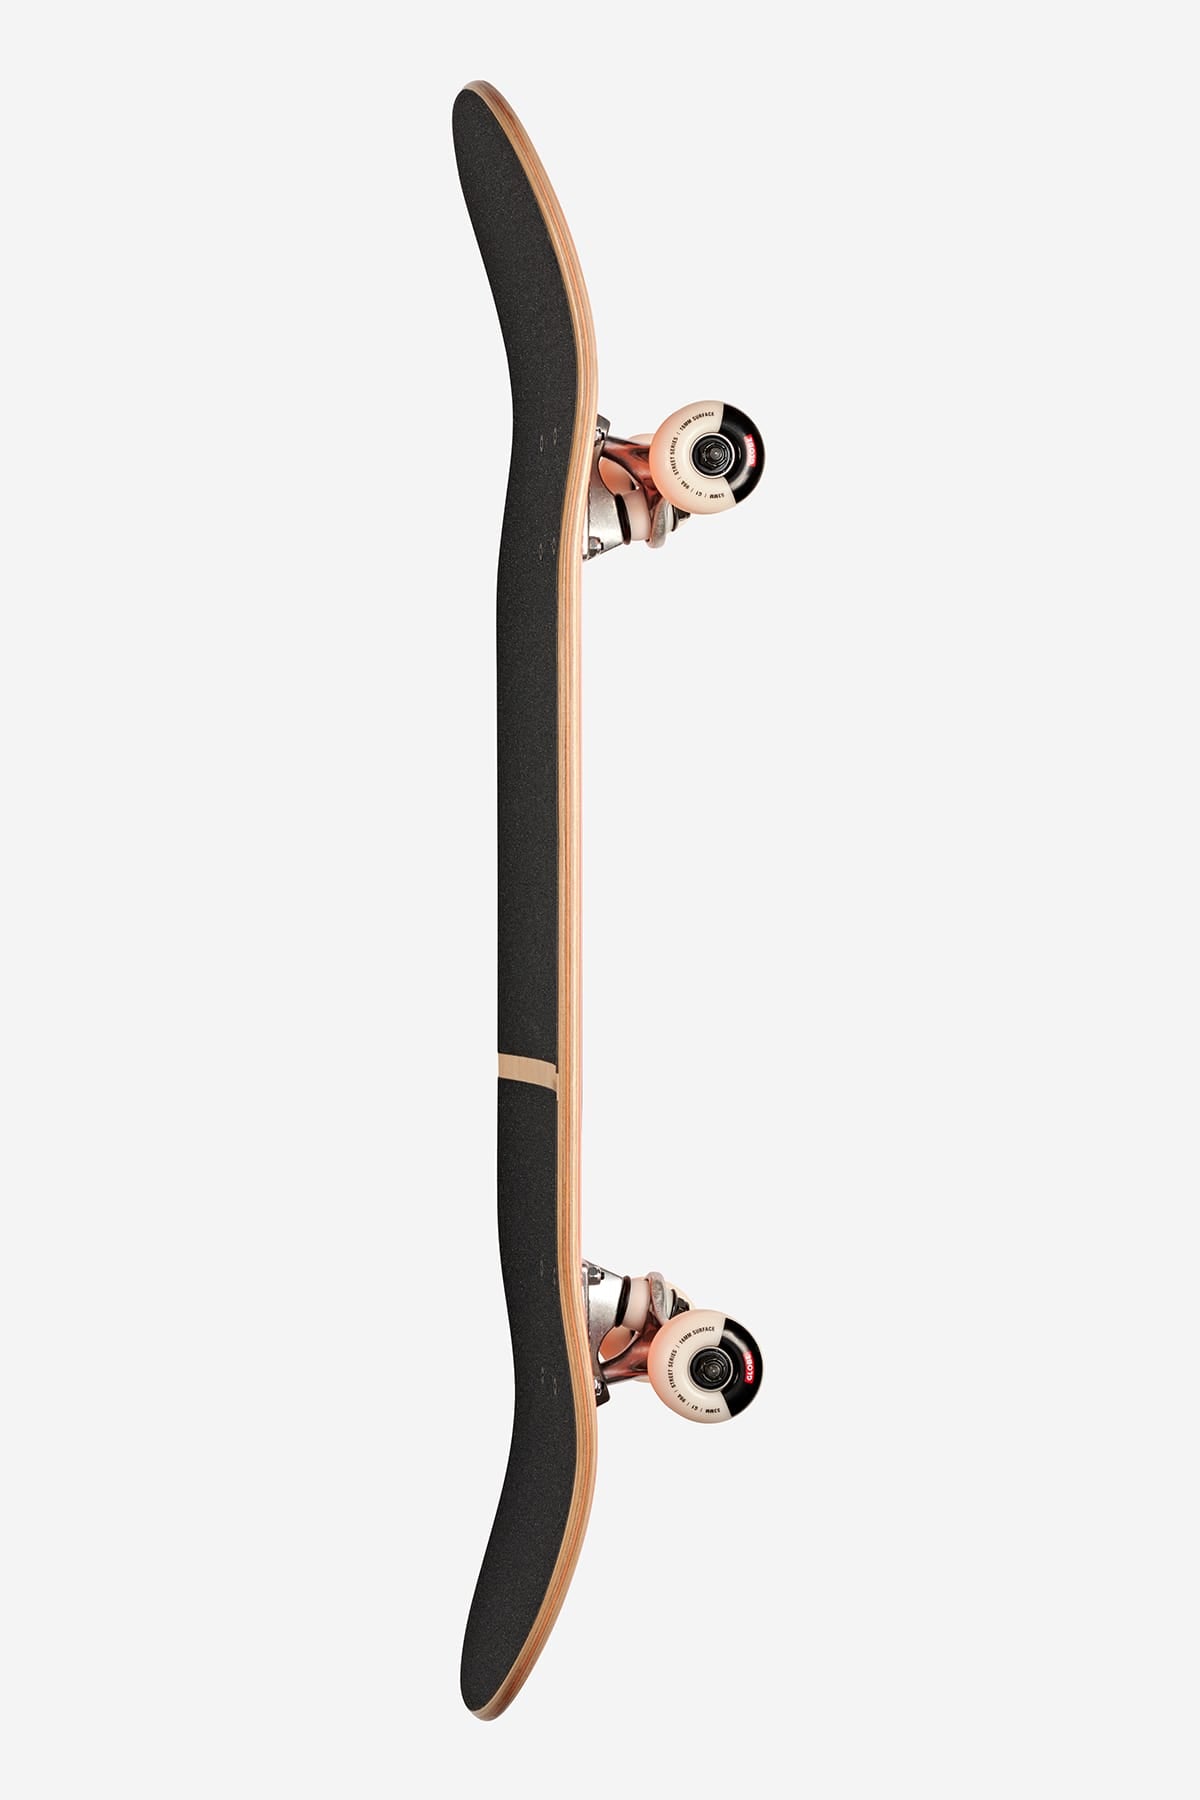 Globe - G1 Digital Nurture - Machine Made Man - 8.0" Compleet Skateboard